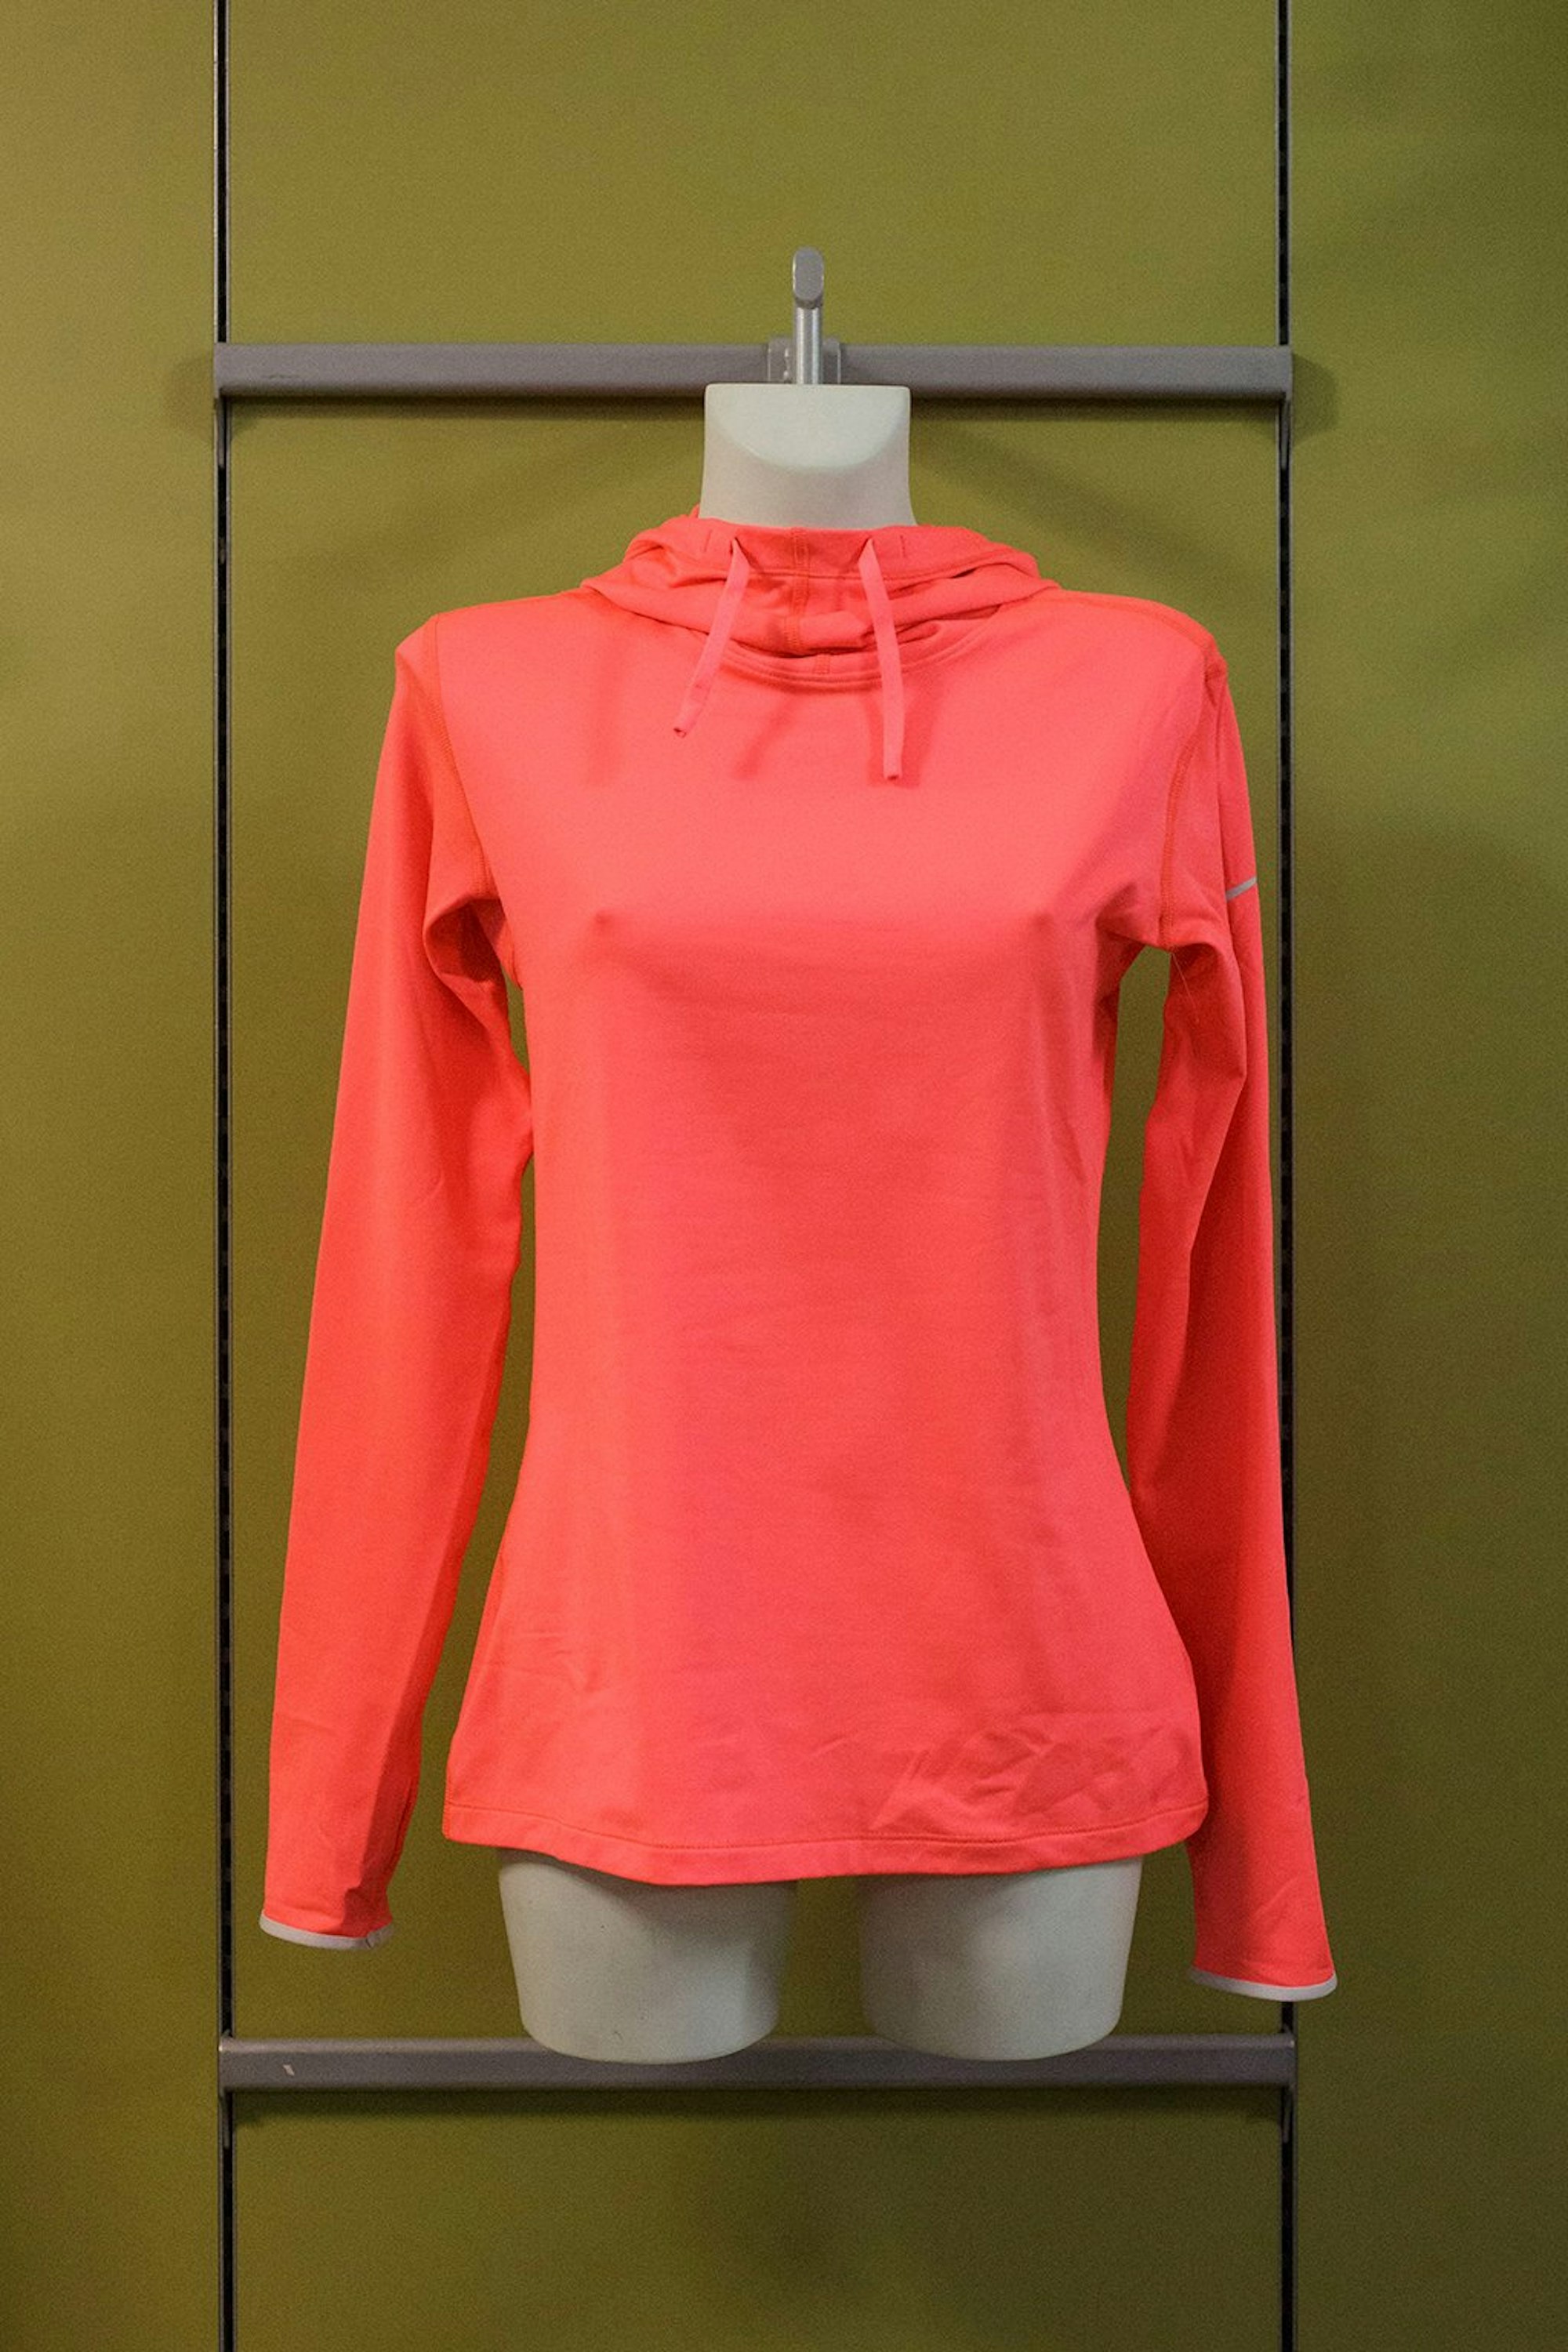 Zweite Schicht: Neonfarbenes Lauf-Shirt für Damen mit Kapuze von Nike (59,95). Die Kapuze ersetzt die Mütze, wenn es nicht zu kalt ist.